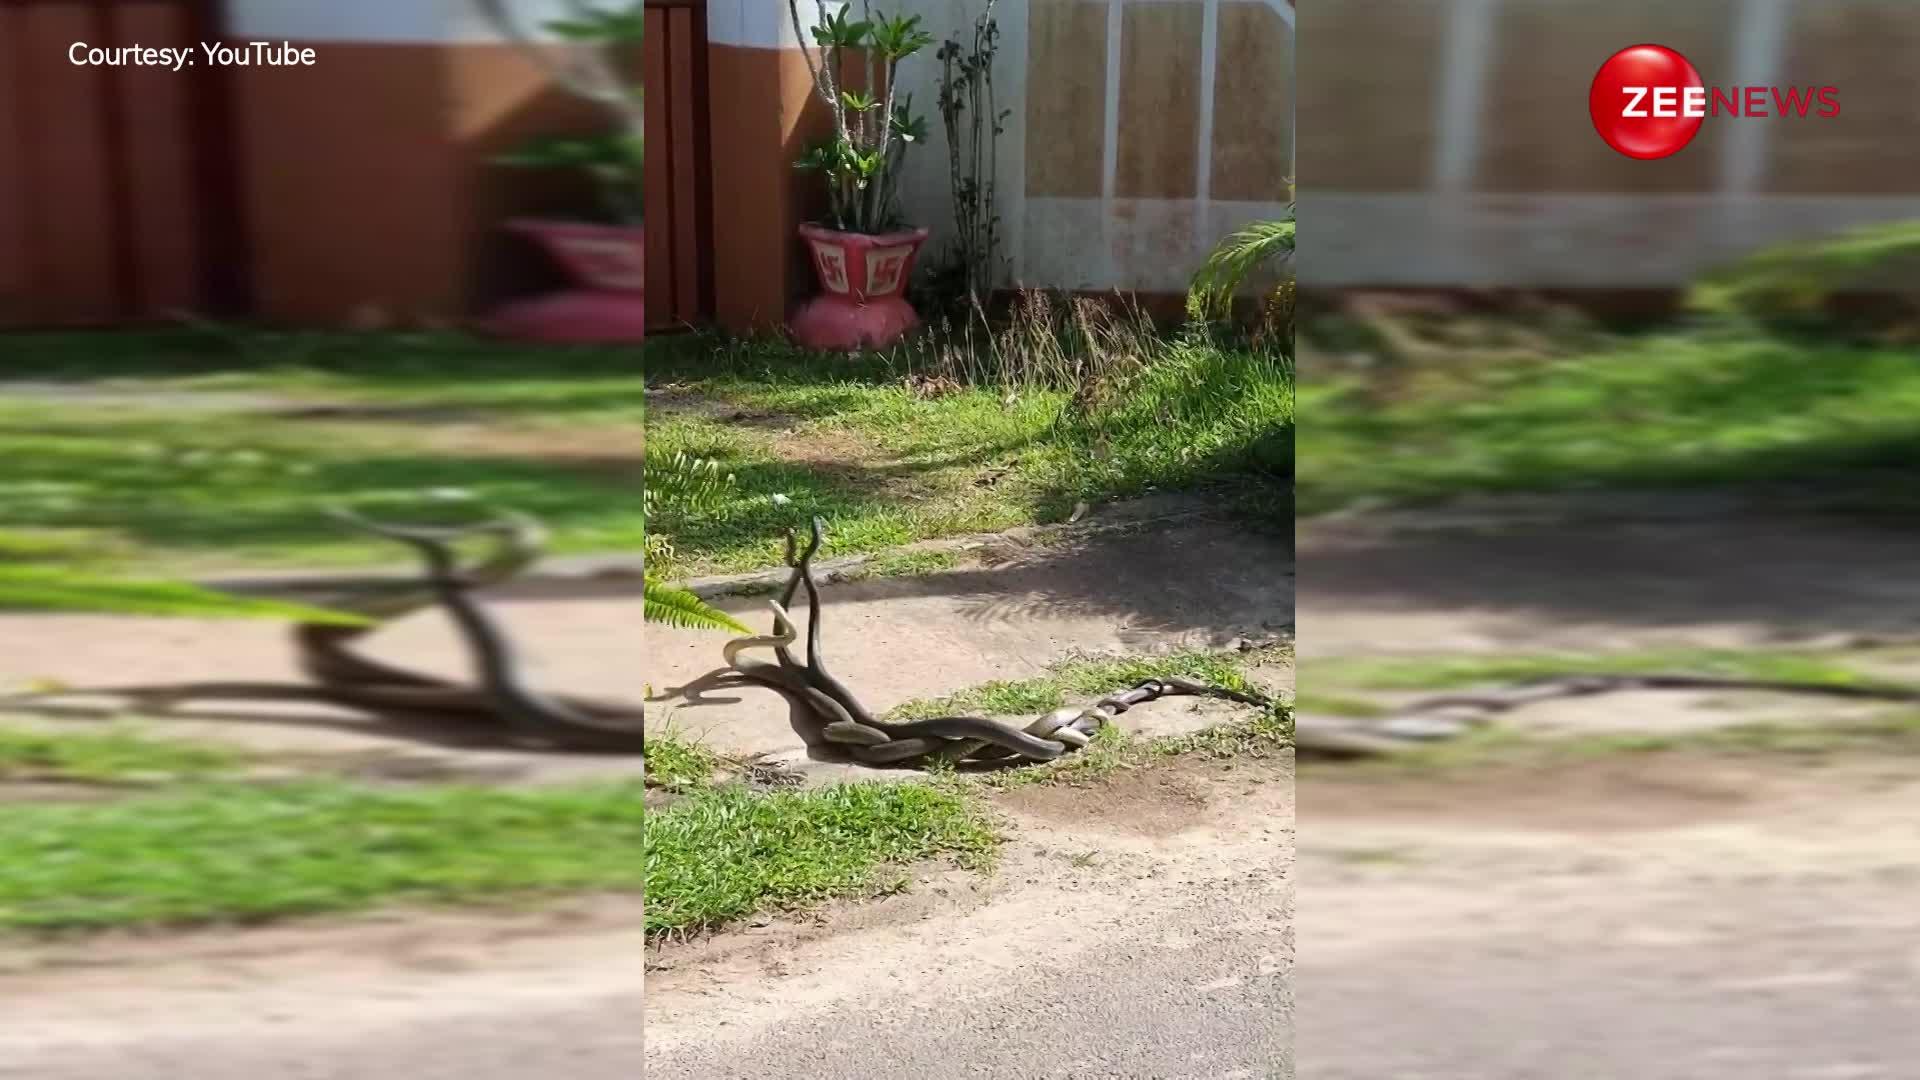 नाग-नागिन के रोमांस के बीच आ गया जहरीला किंग कोबरा, देखें रंग में भंग डालने का ये वीडियो